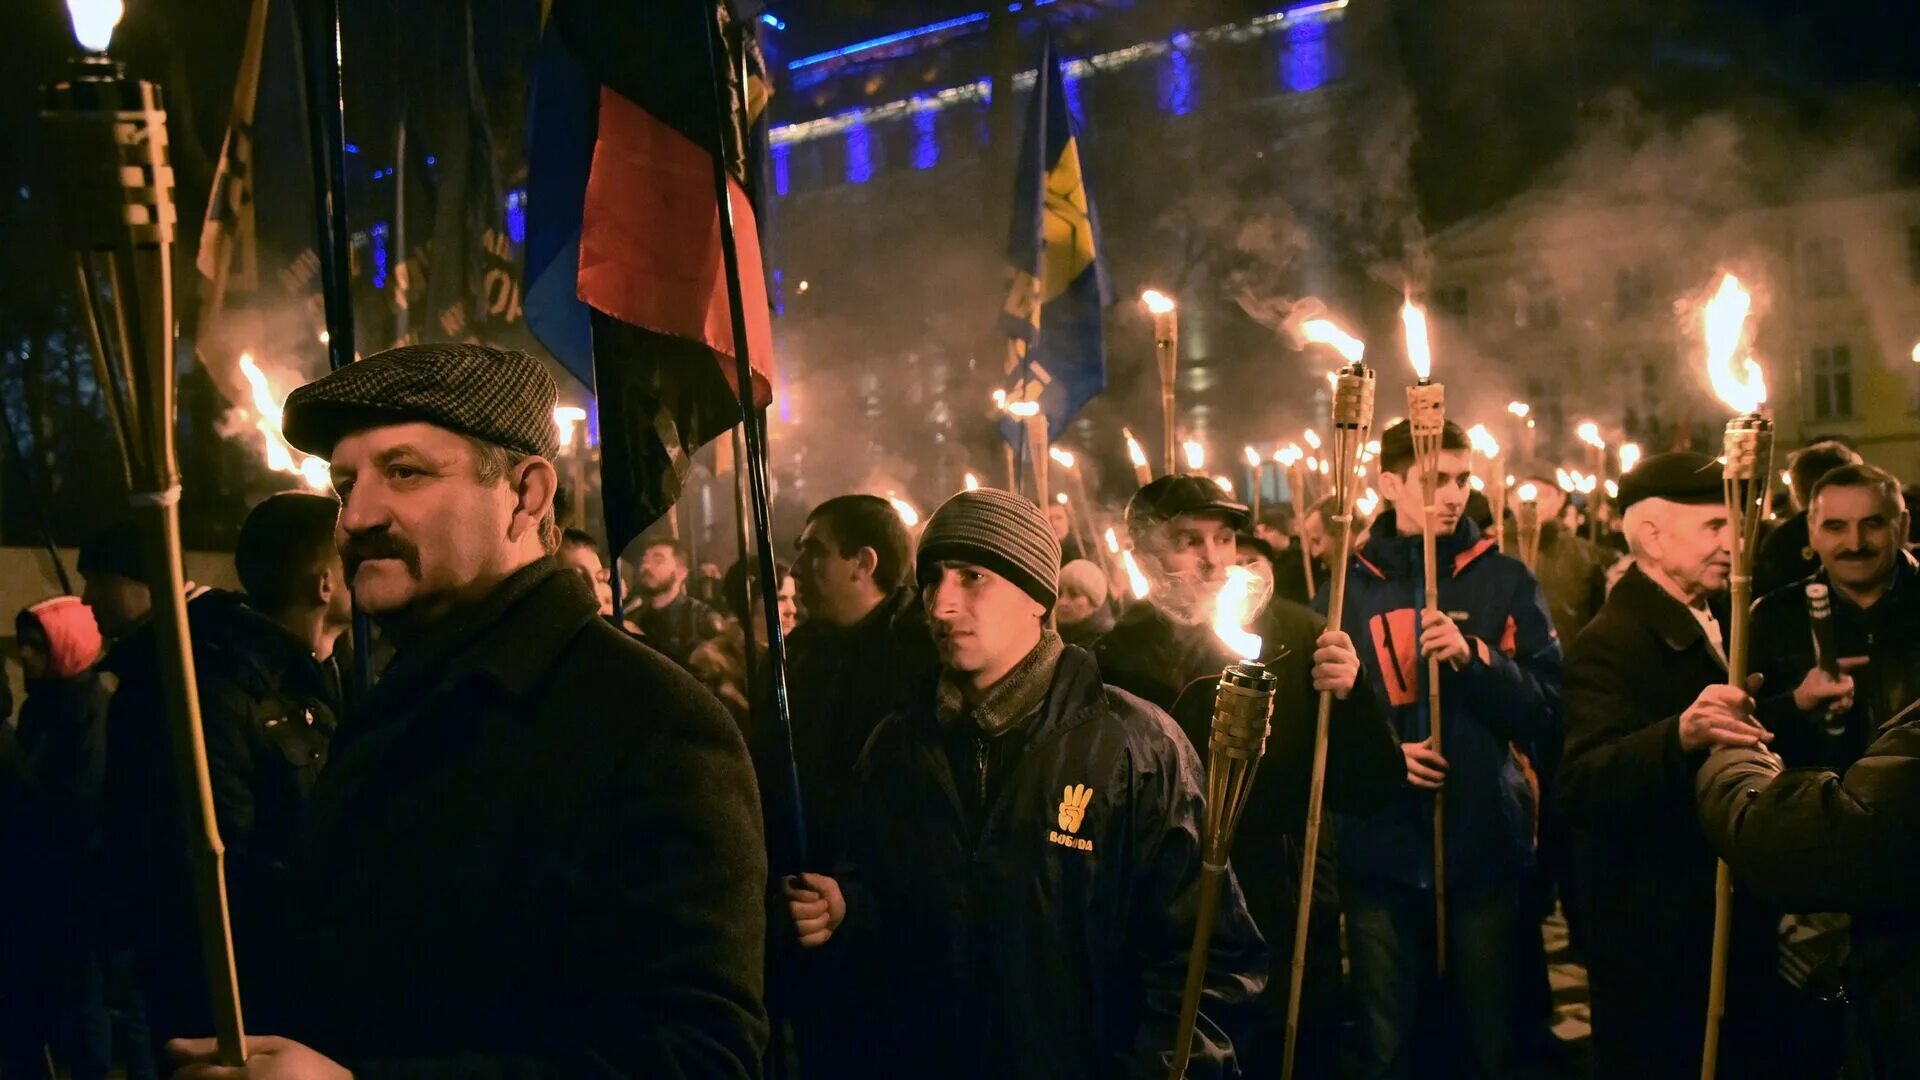 Первая очередь свободы. Нацистские организации. Украинский нацизм.